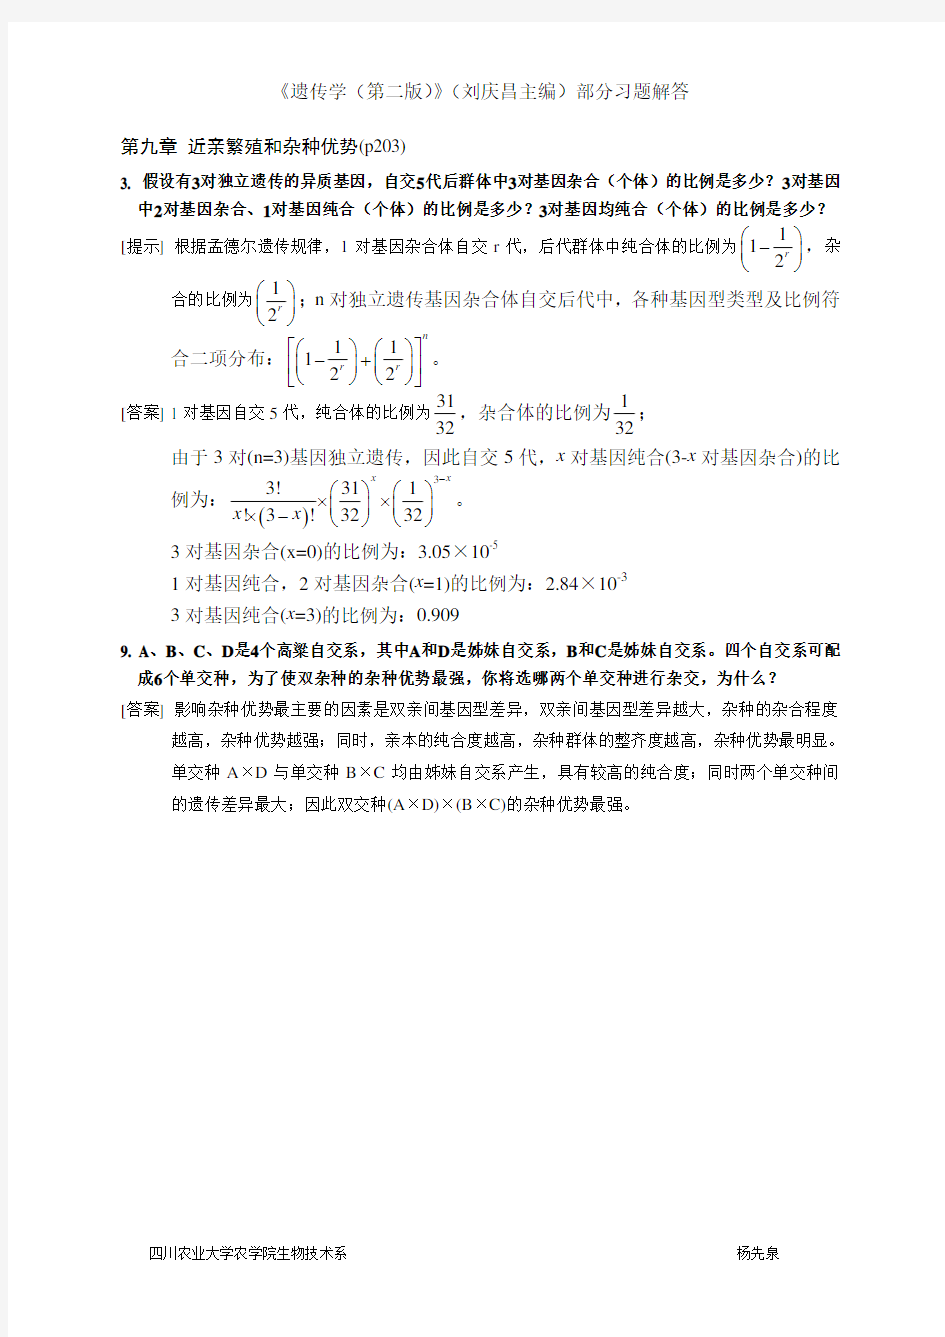 遗传学(刘庆昌第二版) 近亲繁殖与杂种优势 答案